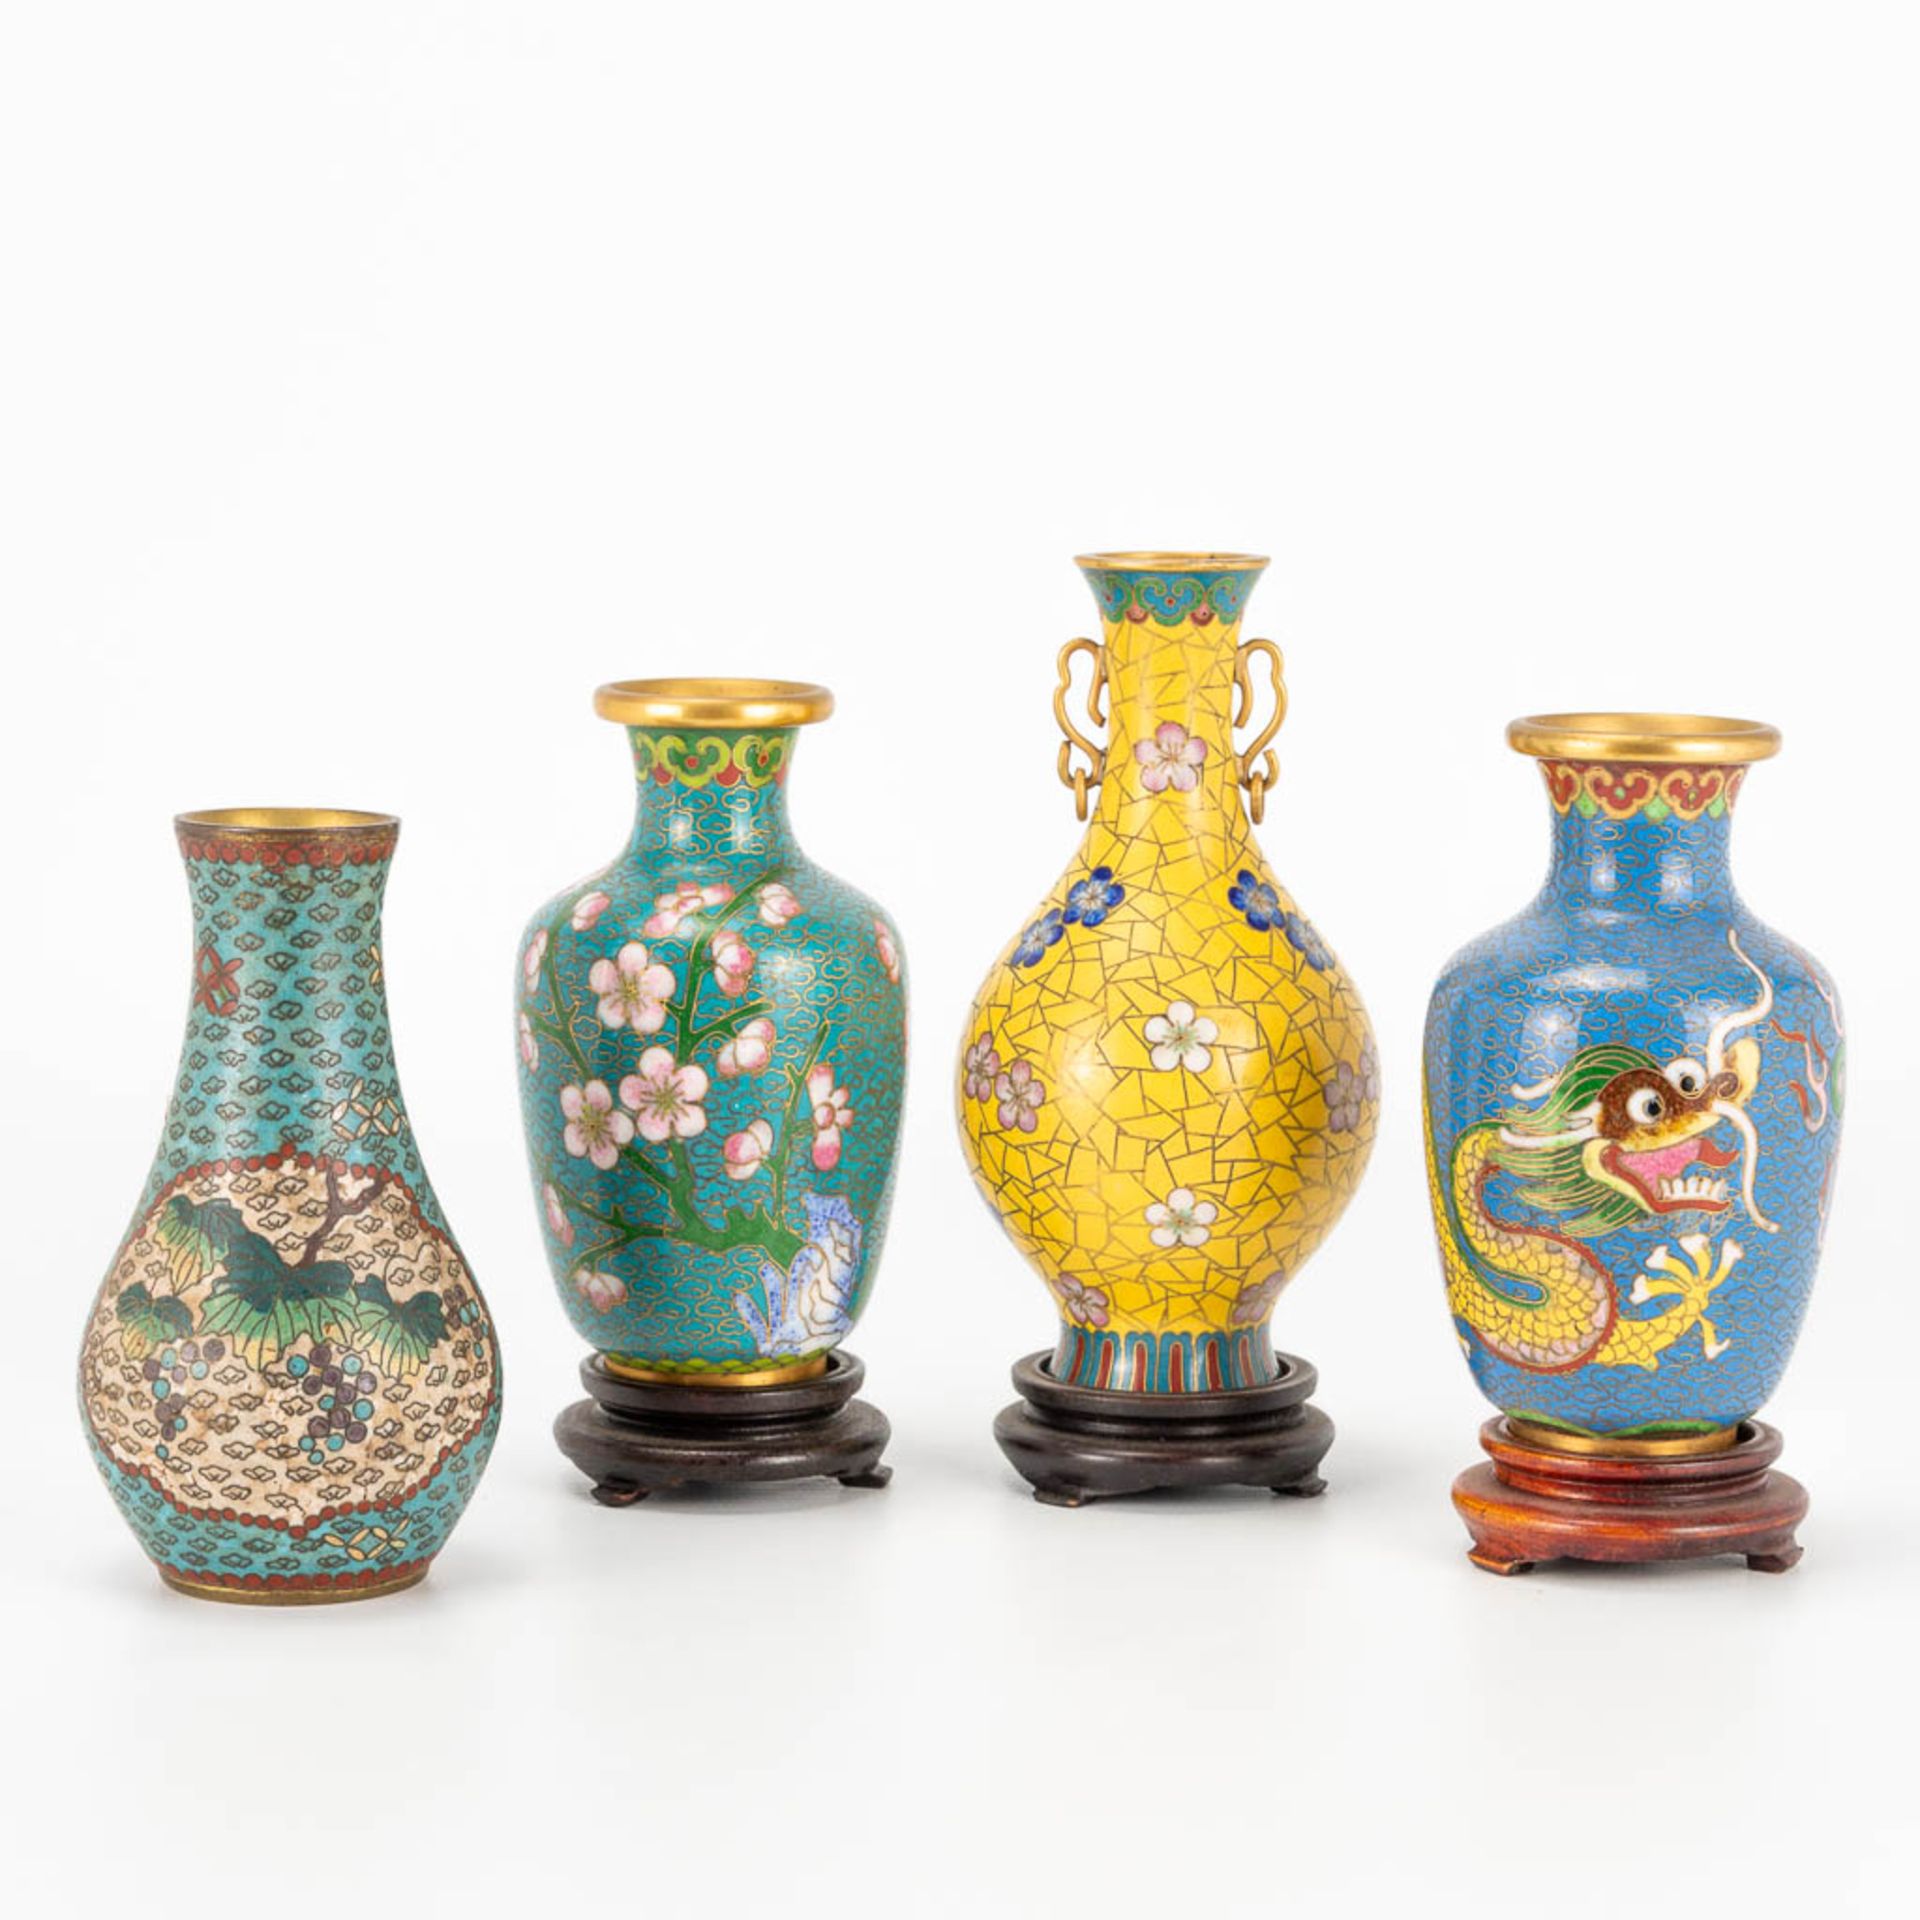 A collection of 4 antique miniature cloisonne vases. (12,5 x 7 cm)